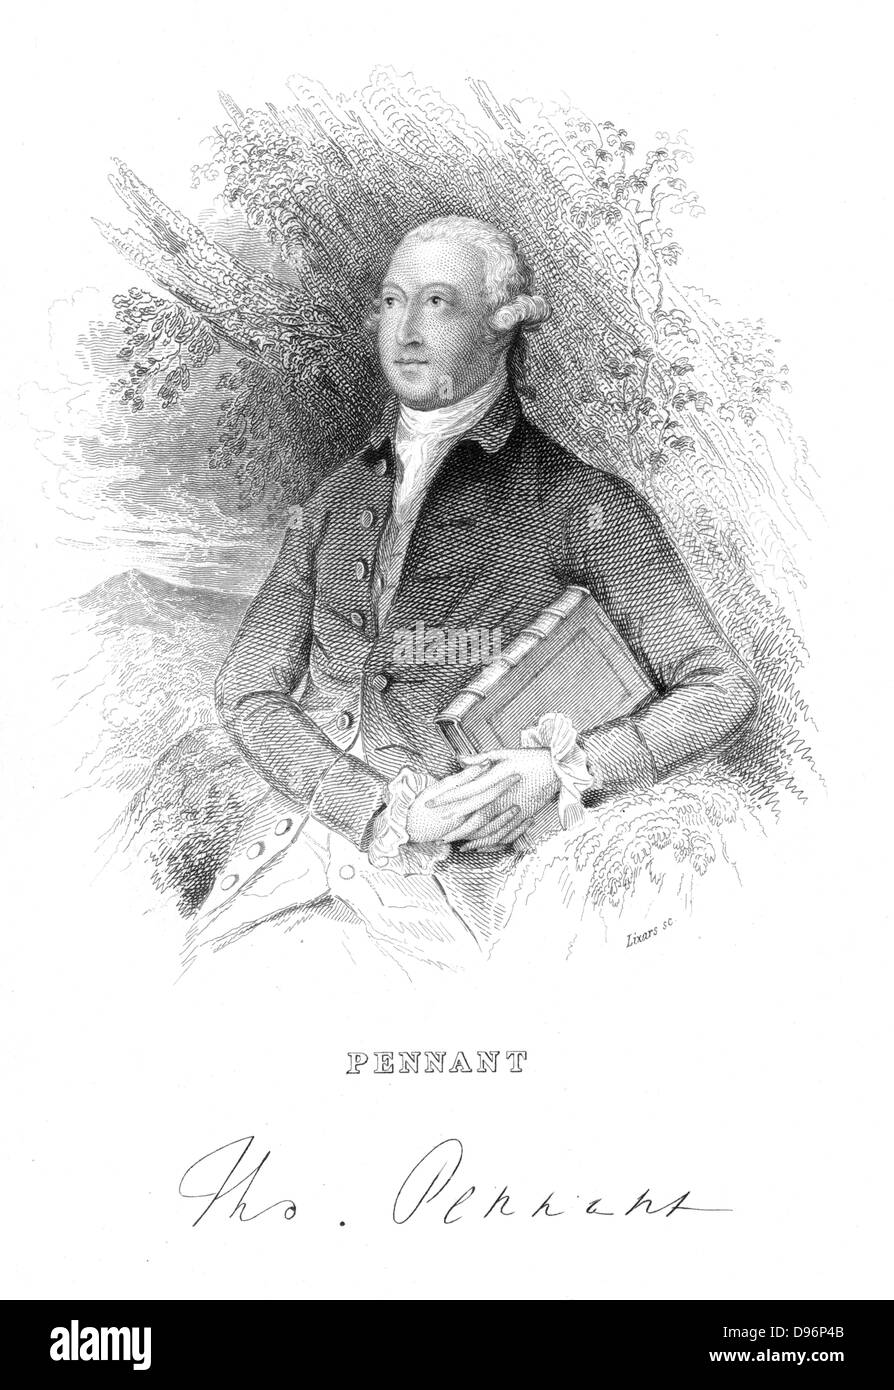 Thomas Pennant (1726-1798) naturaliste et voyageur britannique, c1776. [C1840]. Fanion est assis par un arbre tenant un livre représentant son 'british' Zoologie, 1766. Après gravure Thomas Gainsborough (1727-1788) de 'La bibliothèque du naturaliste", W Jardine, Édimbourg et Londres [1839-54]. Banque D'Images